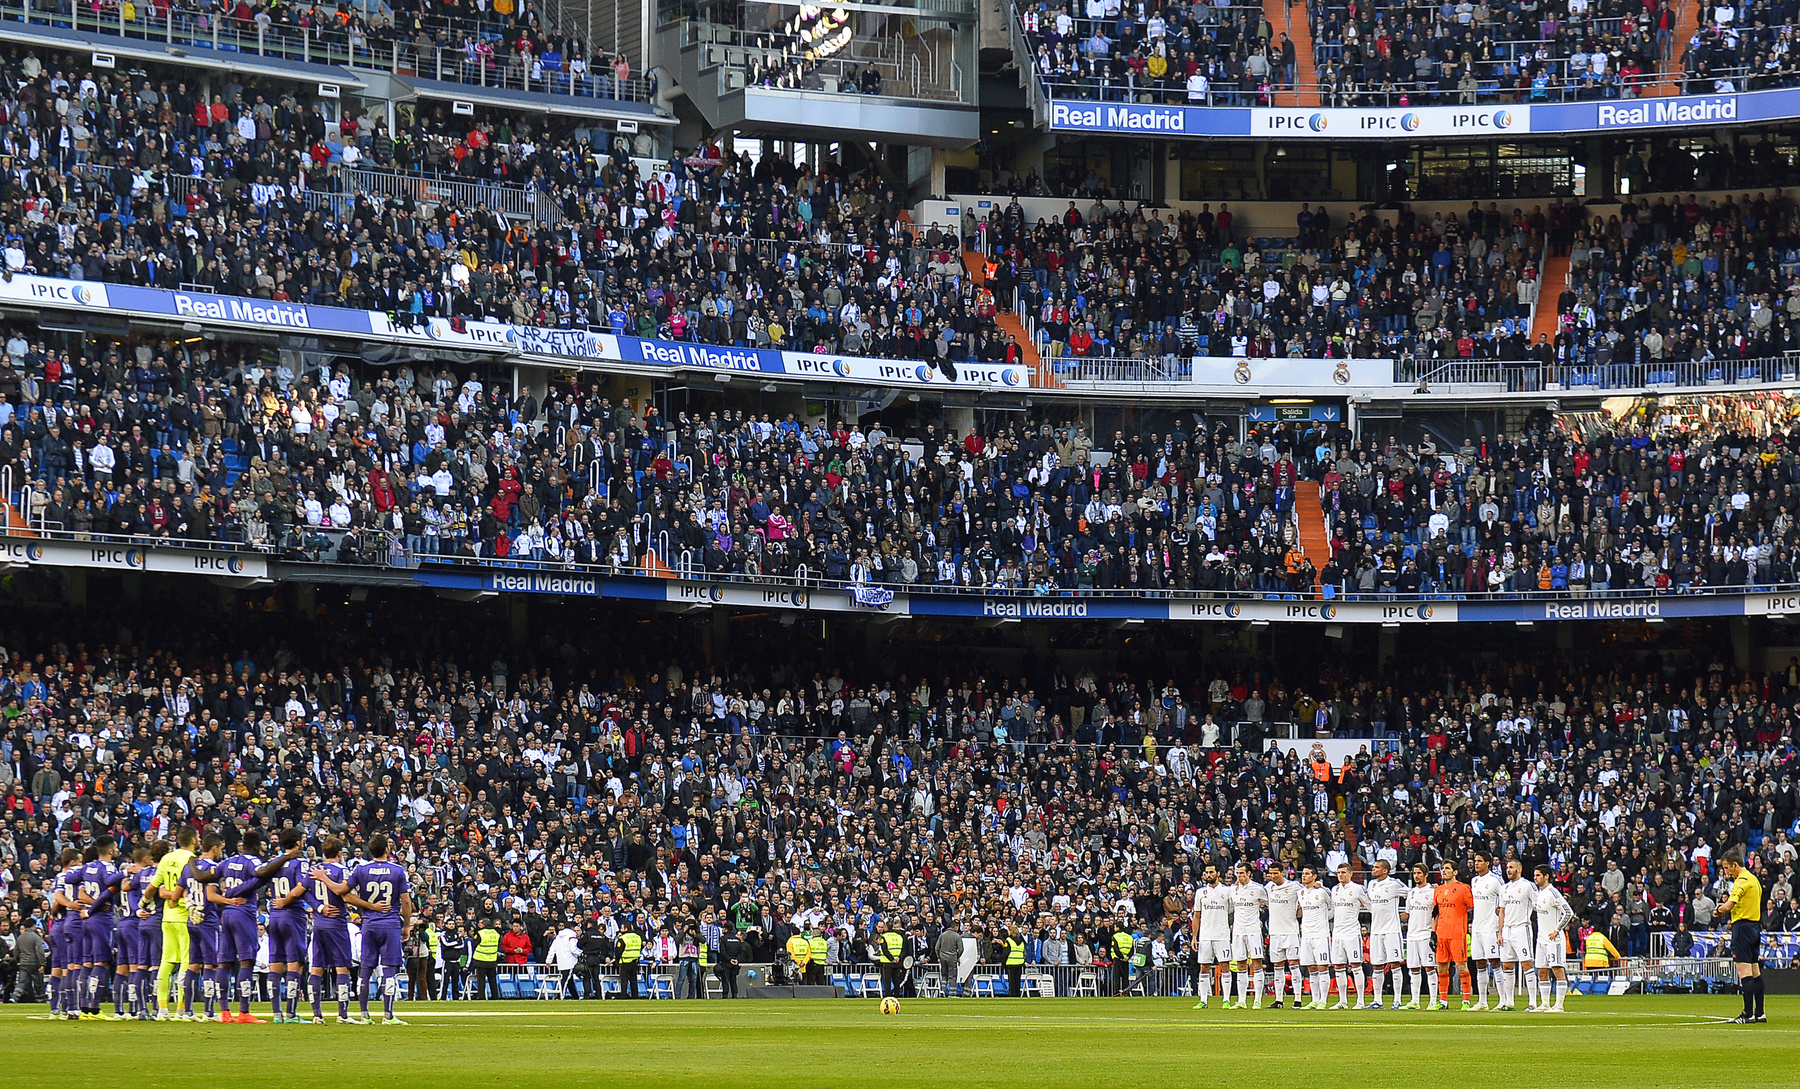 Nemcsak Franciaországban, hanem a spanyoloknál is volt gyászszünet, a Real Madrid és az Espanyol futballistái a kezdőkörnél álltak össze a kezdés előtt. 